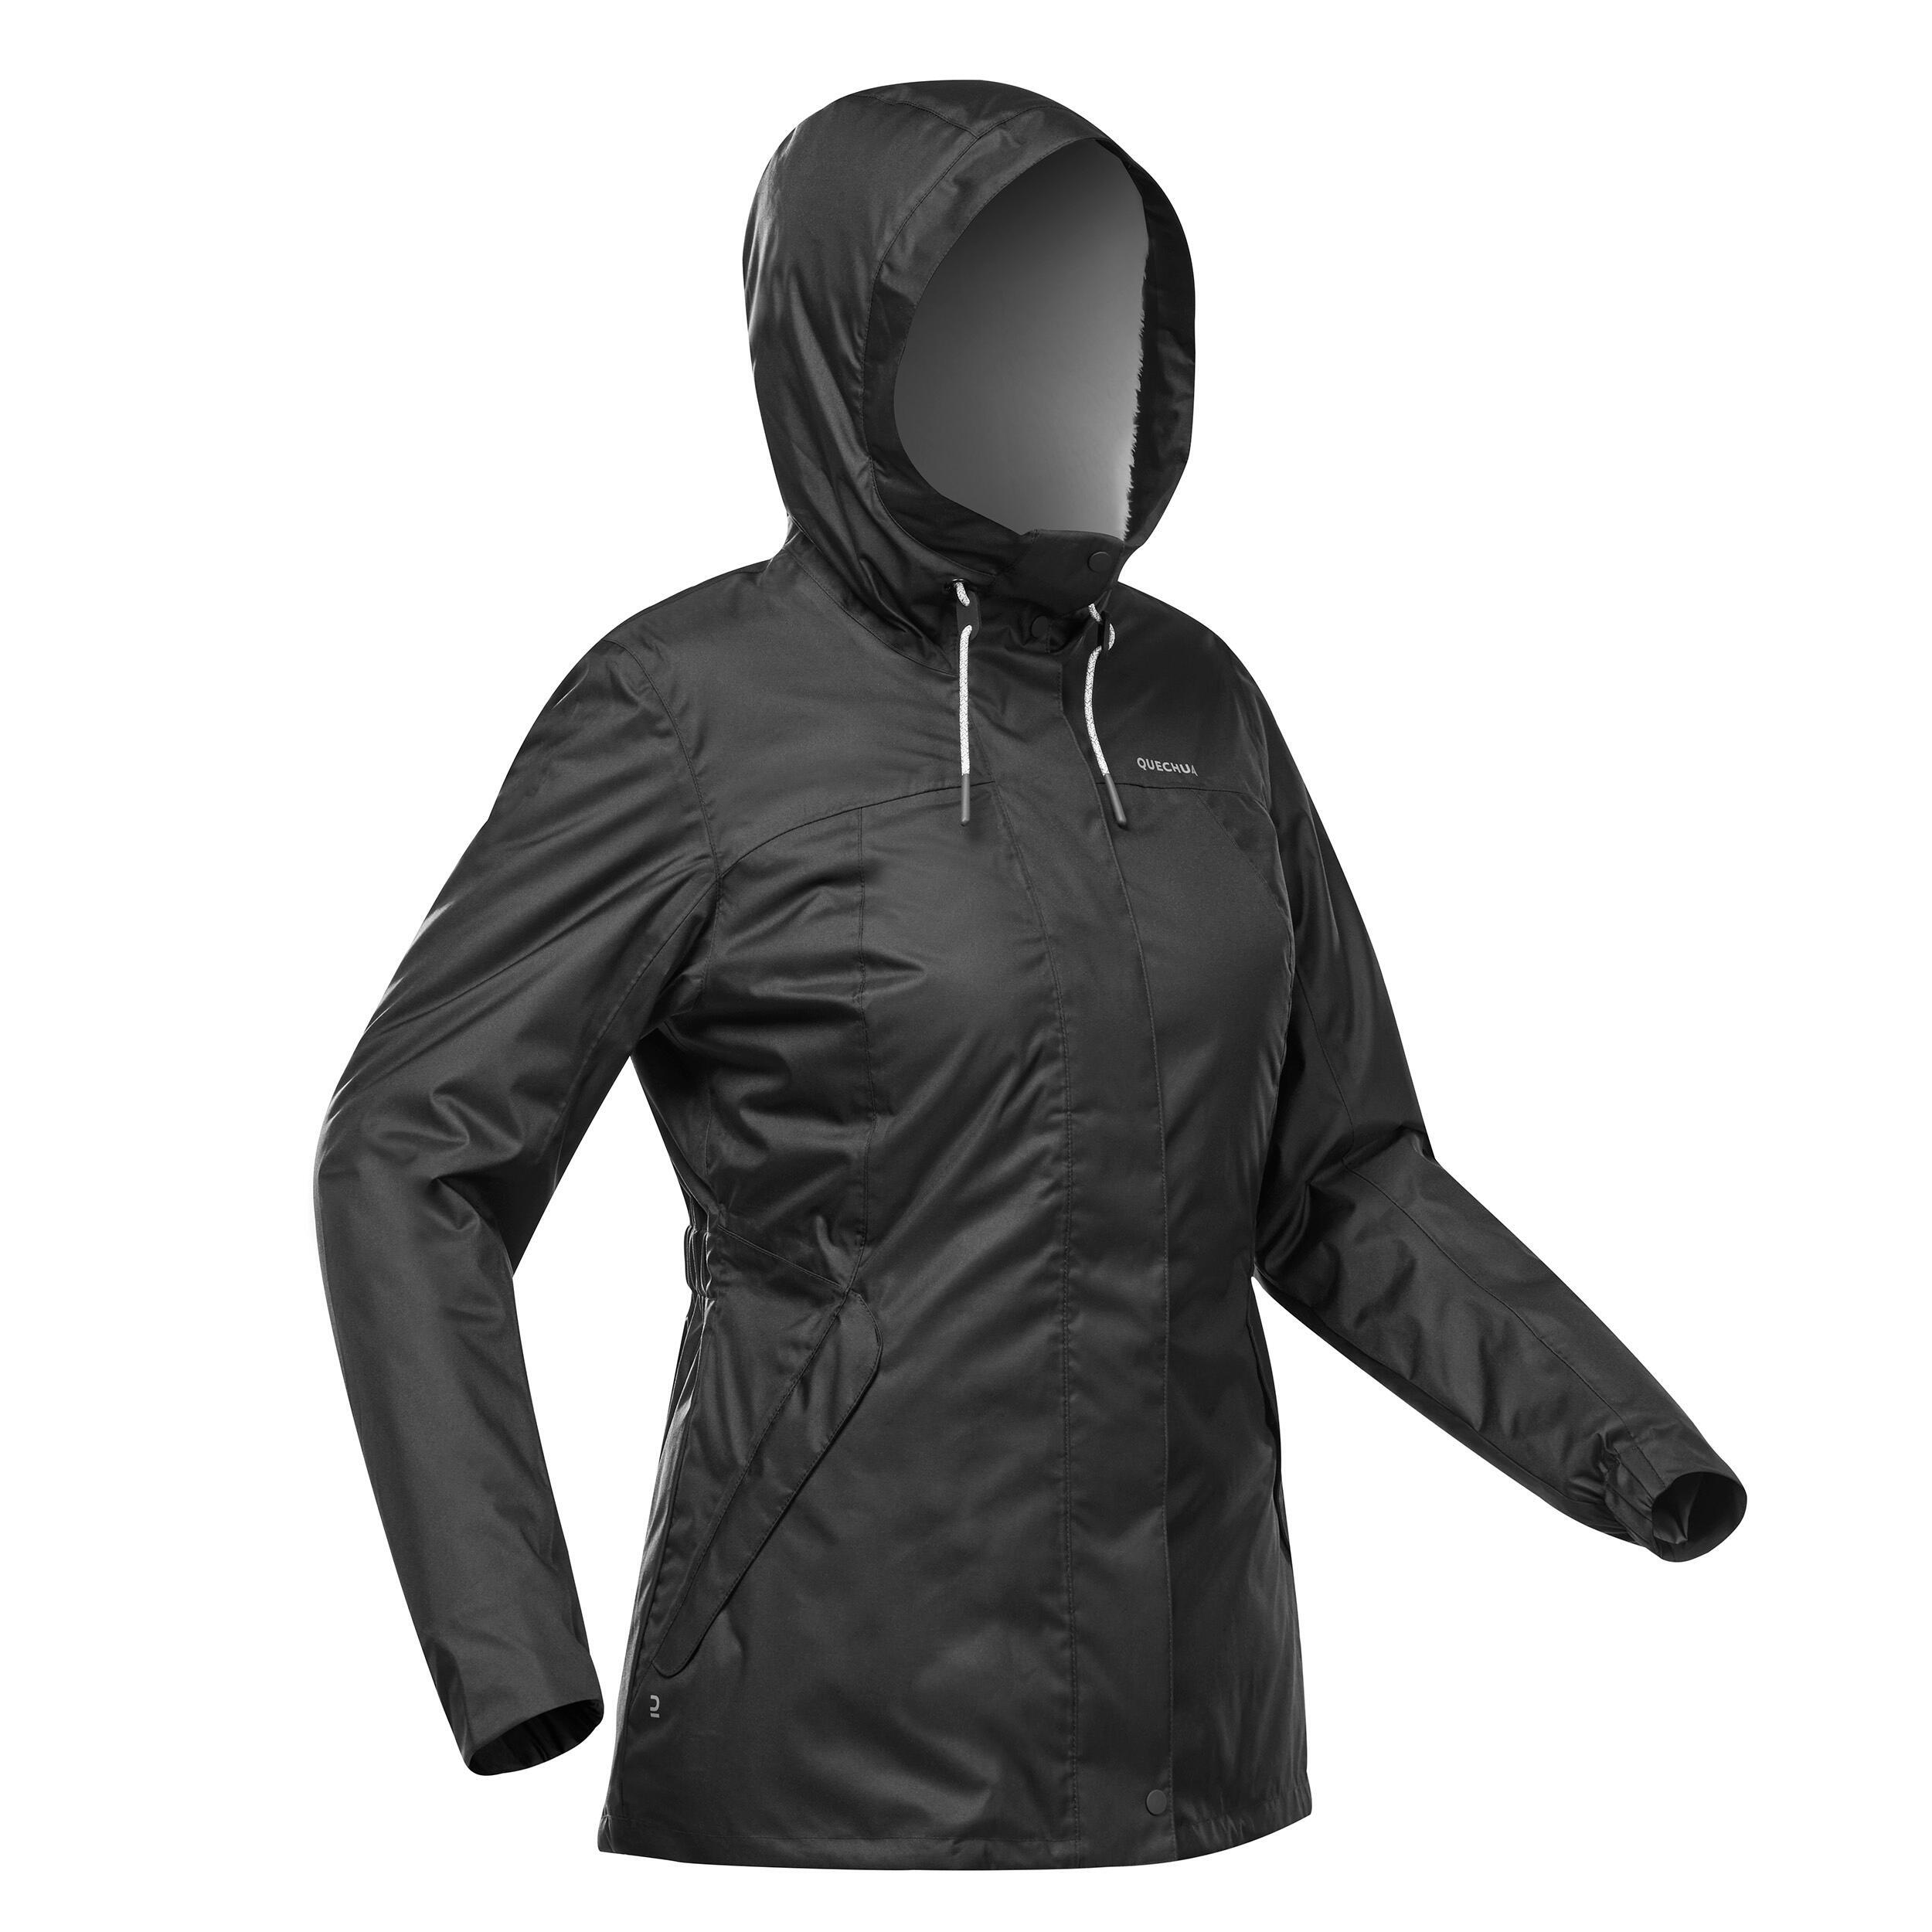 Women’s hiking waterproof winter jacket - SH500 -10°C 4/11